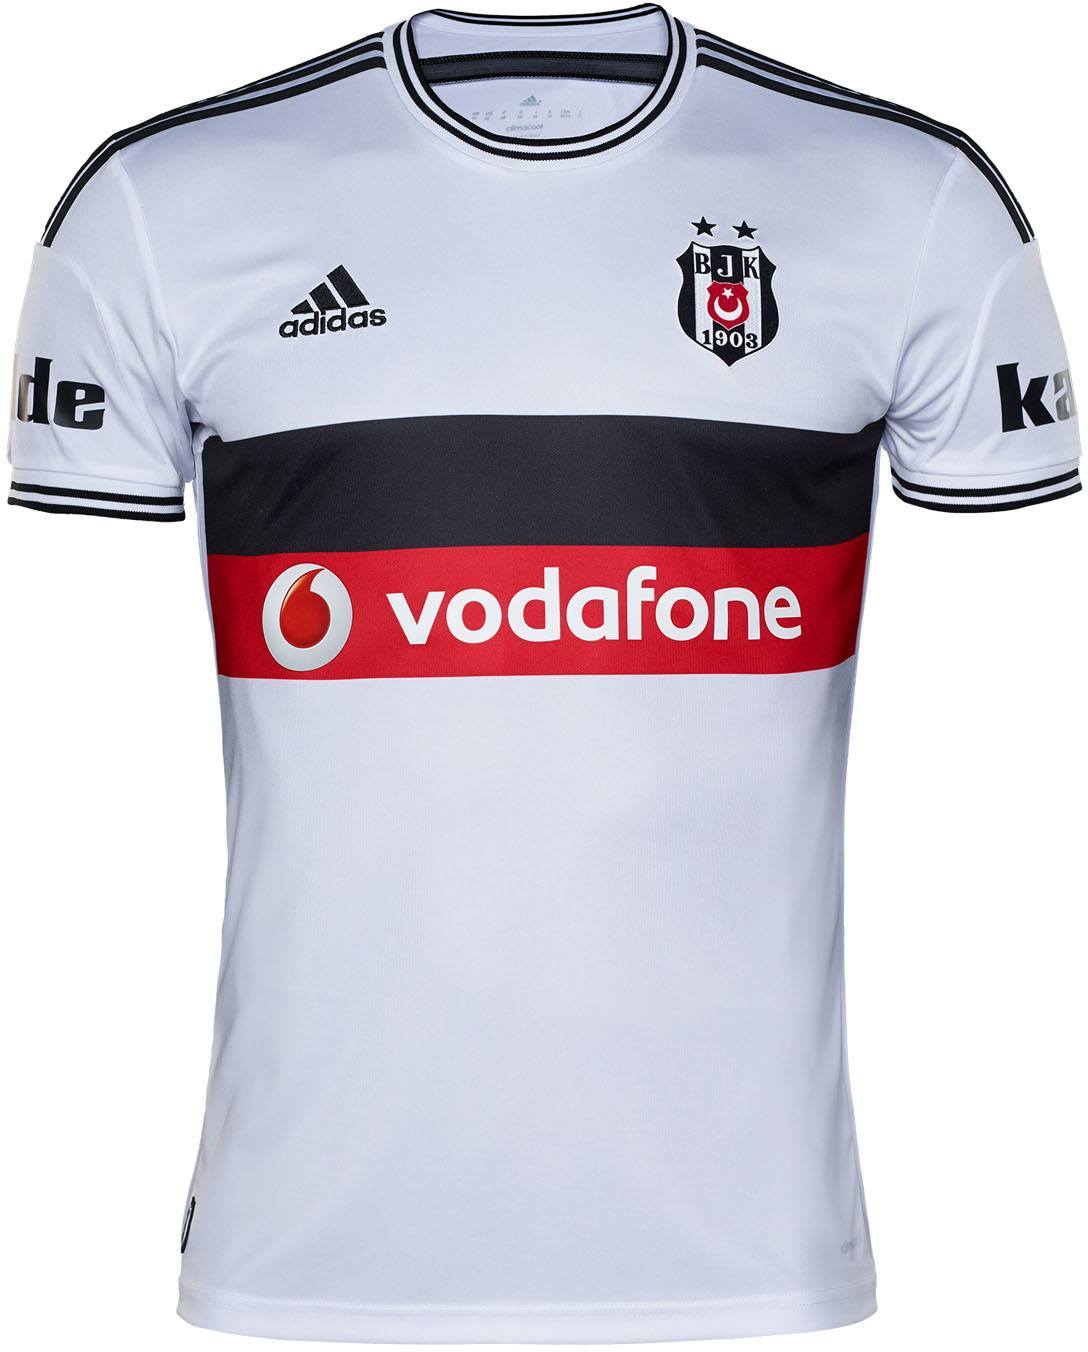 New Beşiktaş 14-15 Kits Released -